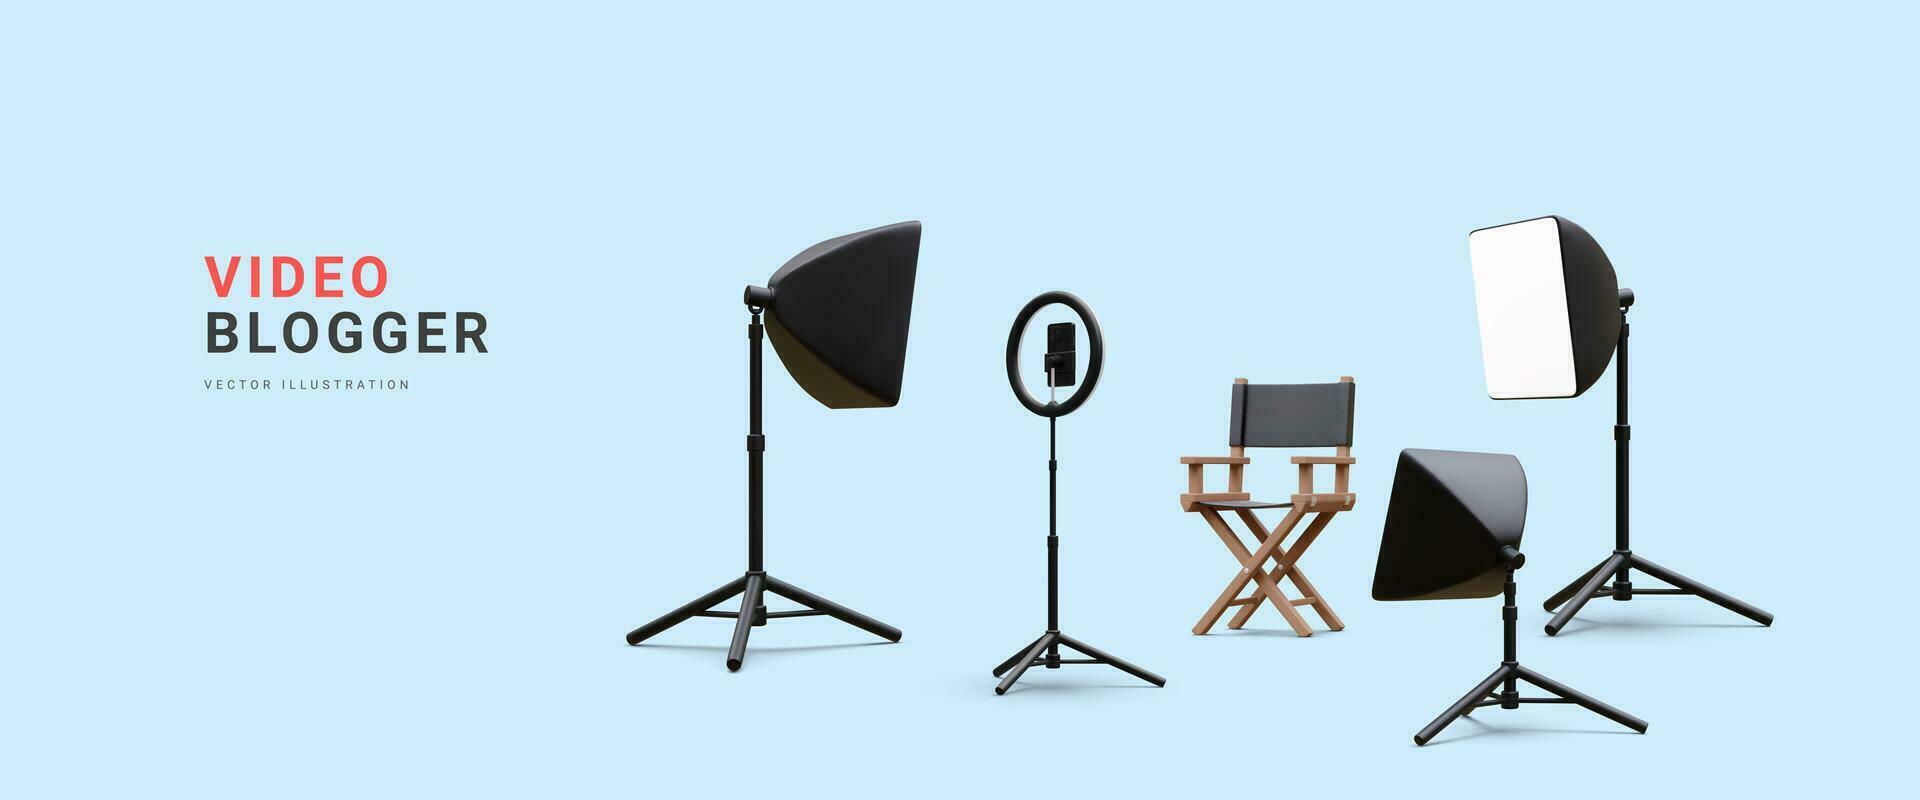 3d réaliste vidéo blogueur concept bannière. endroit pour travail avec projecteur, chaise et téléphone sur trépied avec lumière ampoule et projecteur. vecteur illustration